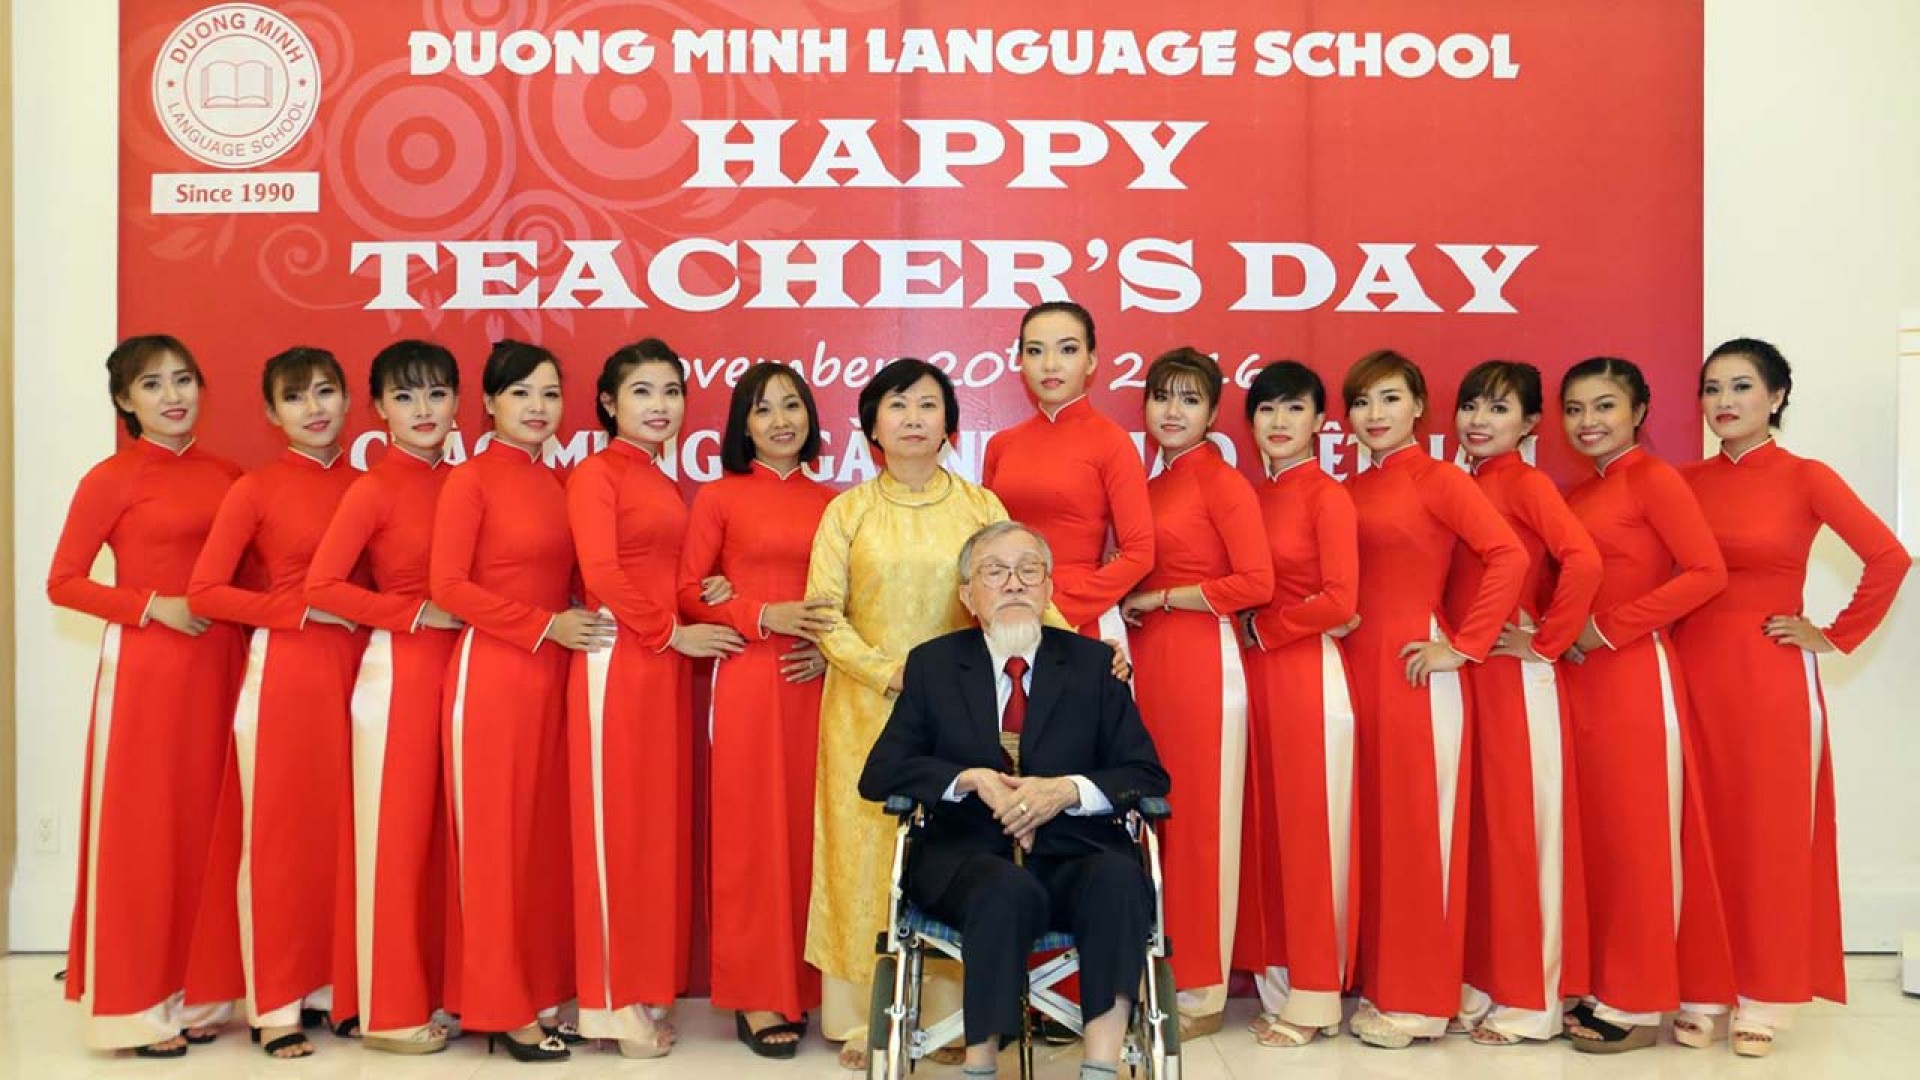 Chương trình Đàm thoại giao tiếp quốc tế của Ngoại ngữ Dương Minh Nguyễn Oanh